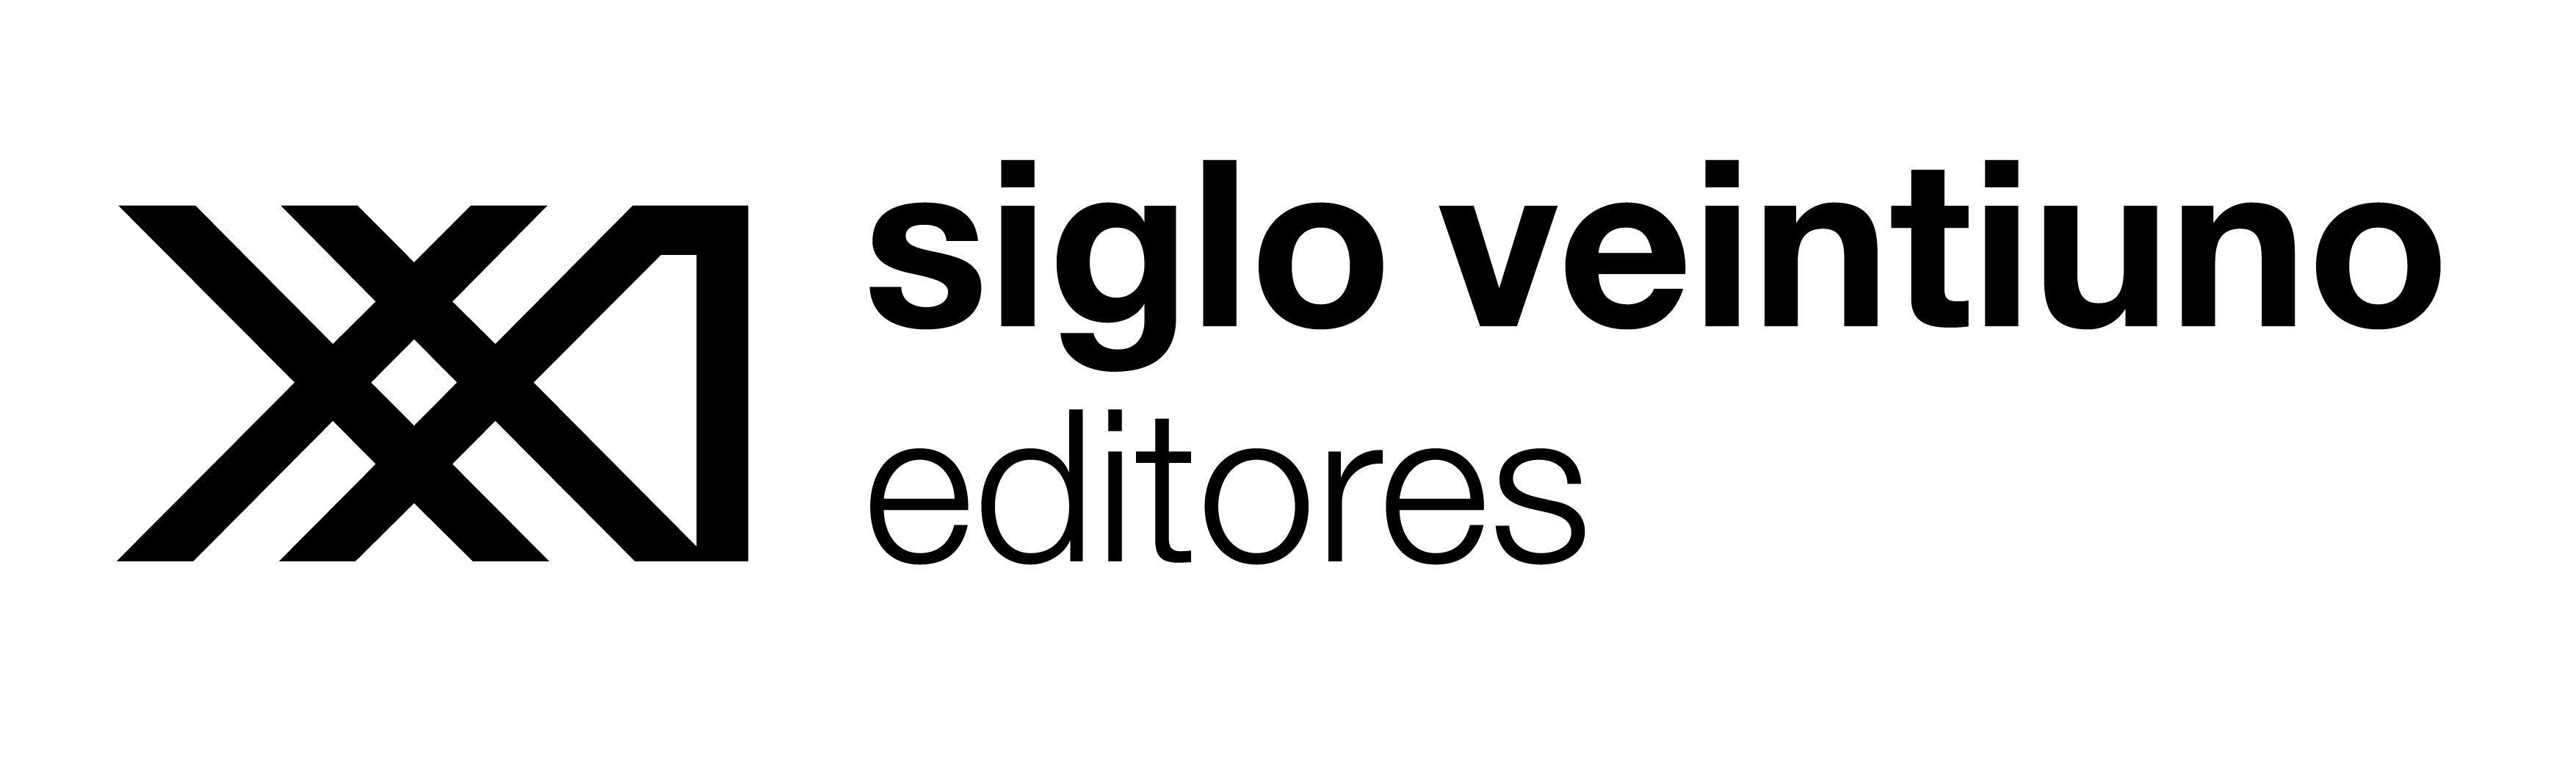 XXI Logo - Siglo xxi